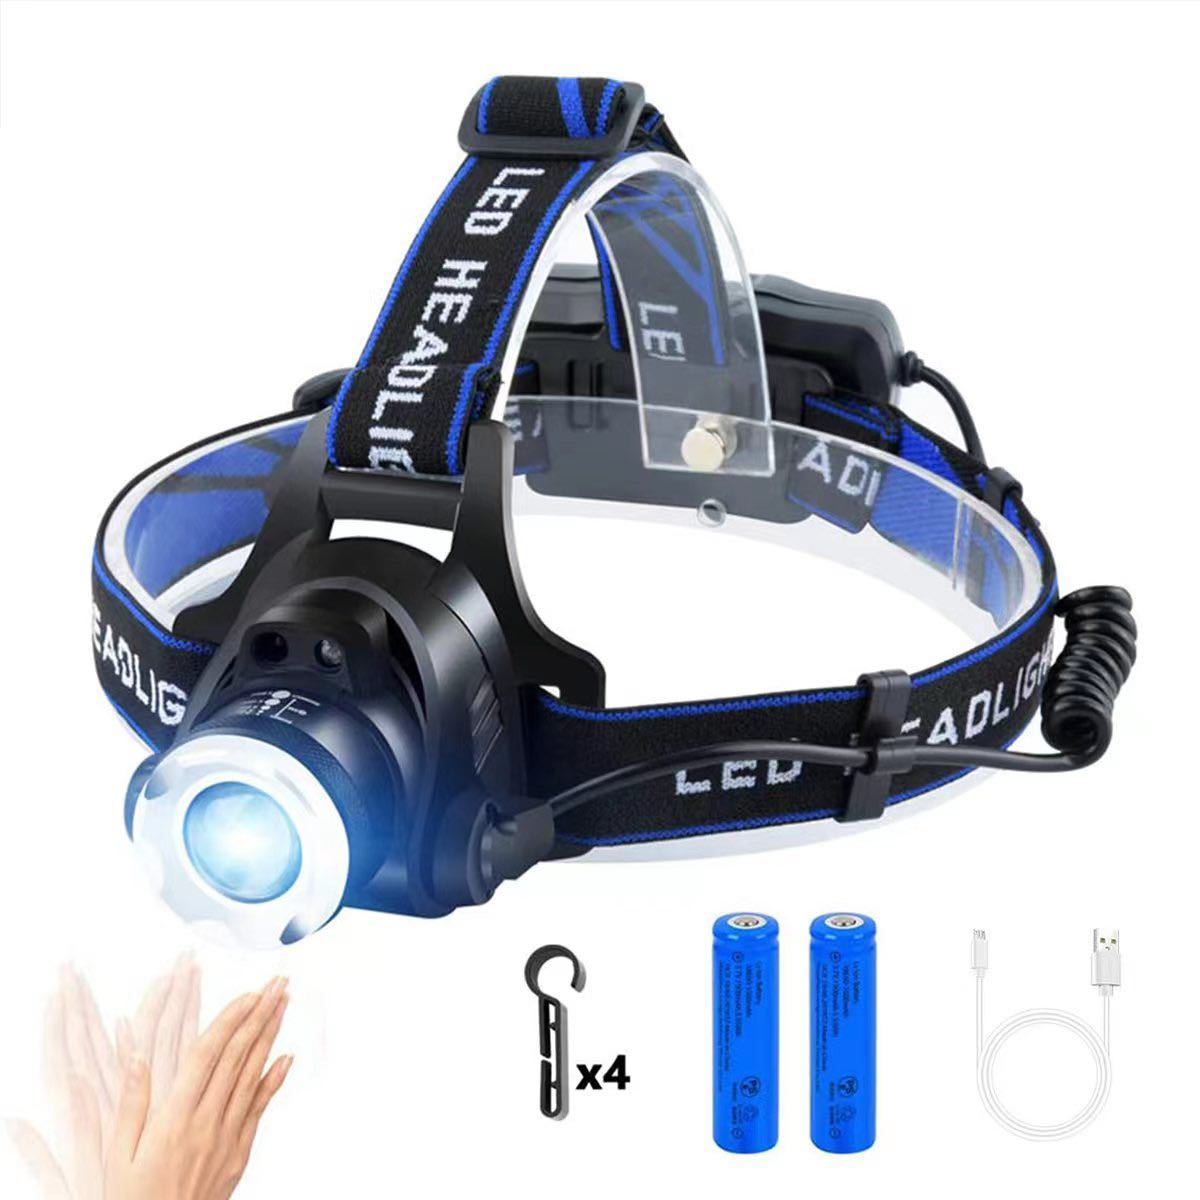 LEDヘッドライト センサー USB充電式 4モード 高輝度 明るい 作業用ライト 防水 作業 キャンプ 散歩 登山 釣り 防災